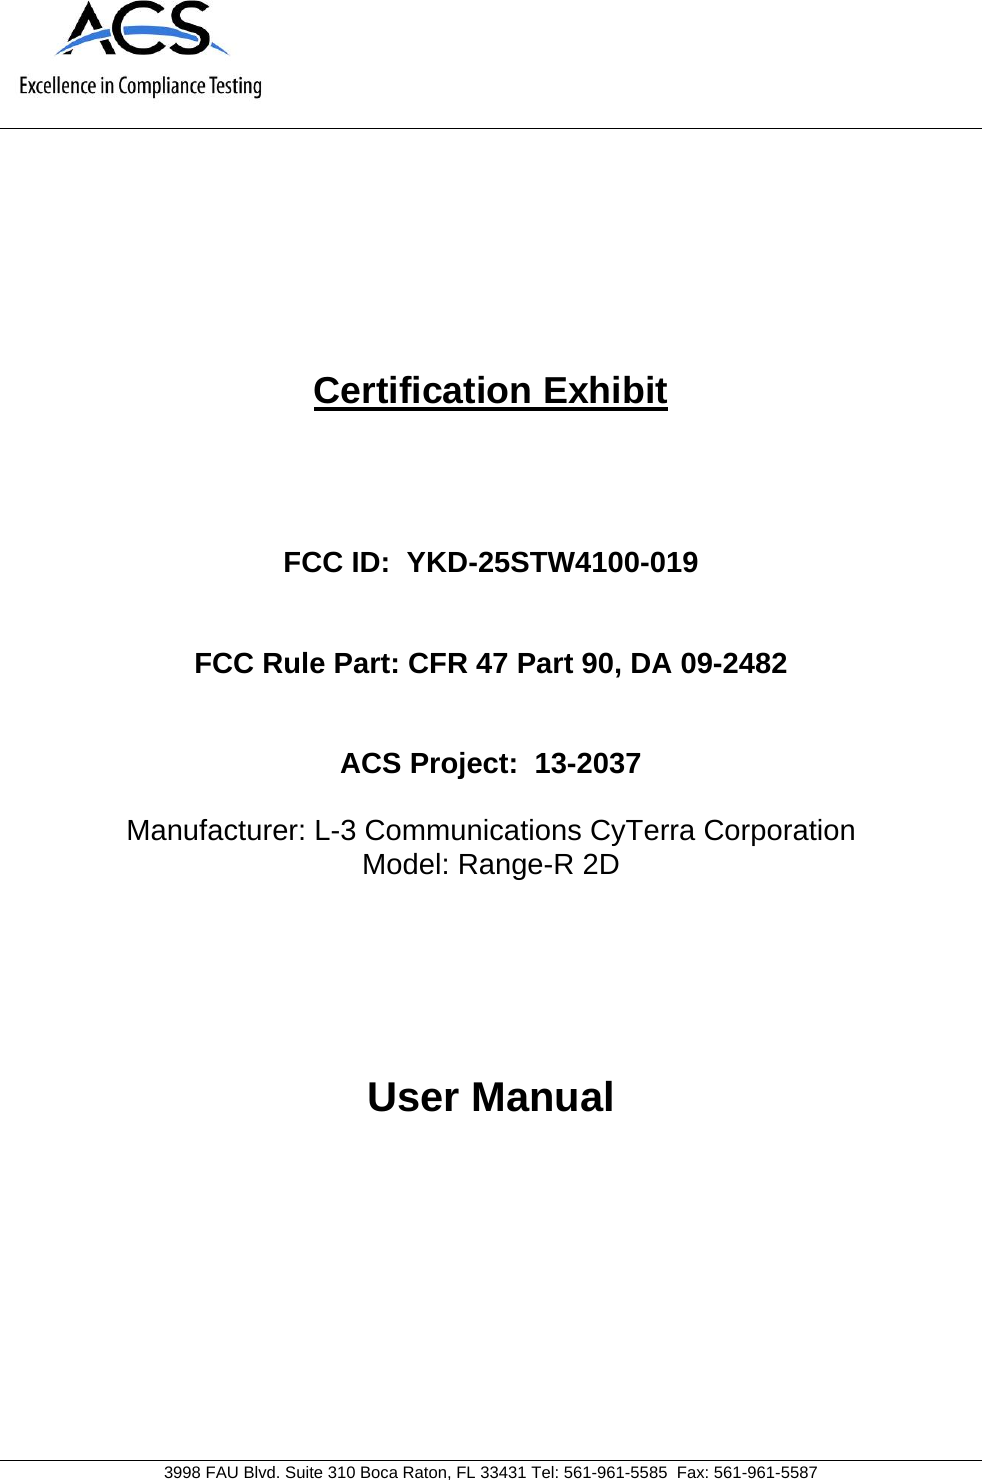     3998 FAU Blvd. Suite 310 Boca Raton, FL 33431 Tel: 561-961-5585  Fax: 561-961-5587 Certification Exhibit     FCC ID:  YKD-25STW4100-019   FCC Rule Part: CFR 47 Part 90, DA 09-2482   ACS Project:  13-2037   Manufacturer: L-3 Communications CyTerra Corporation Model: Range-R 2D     User Manual   